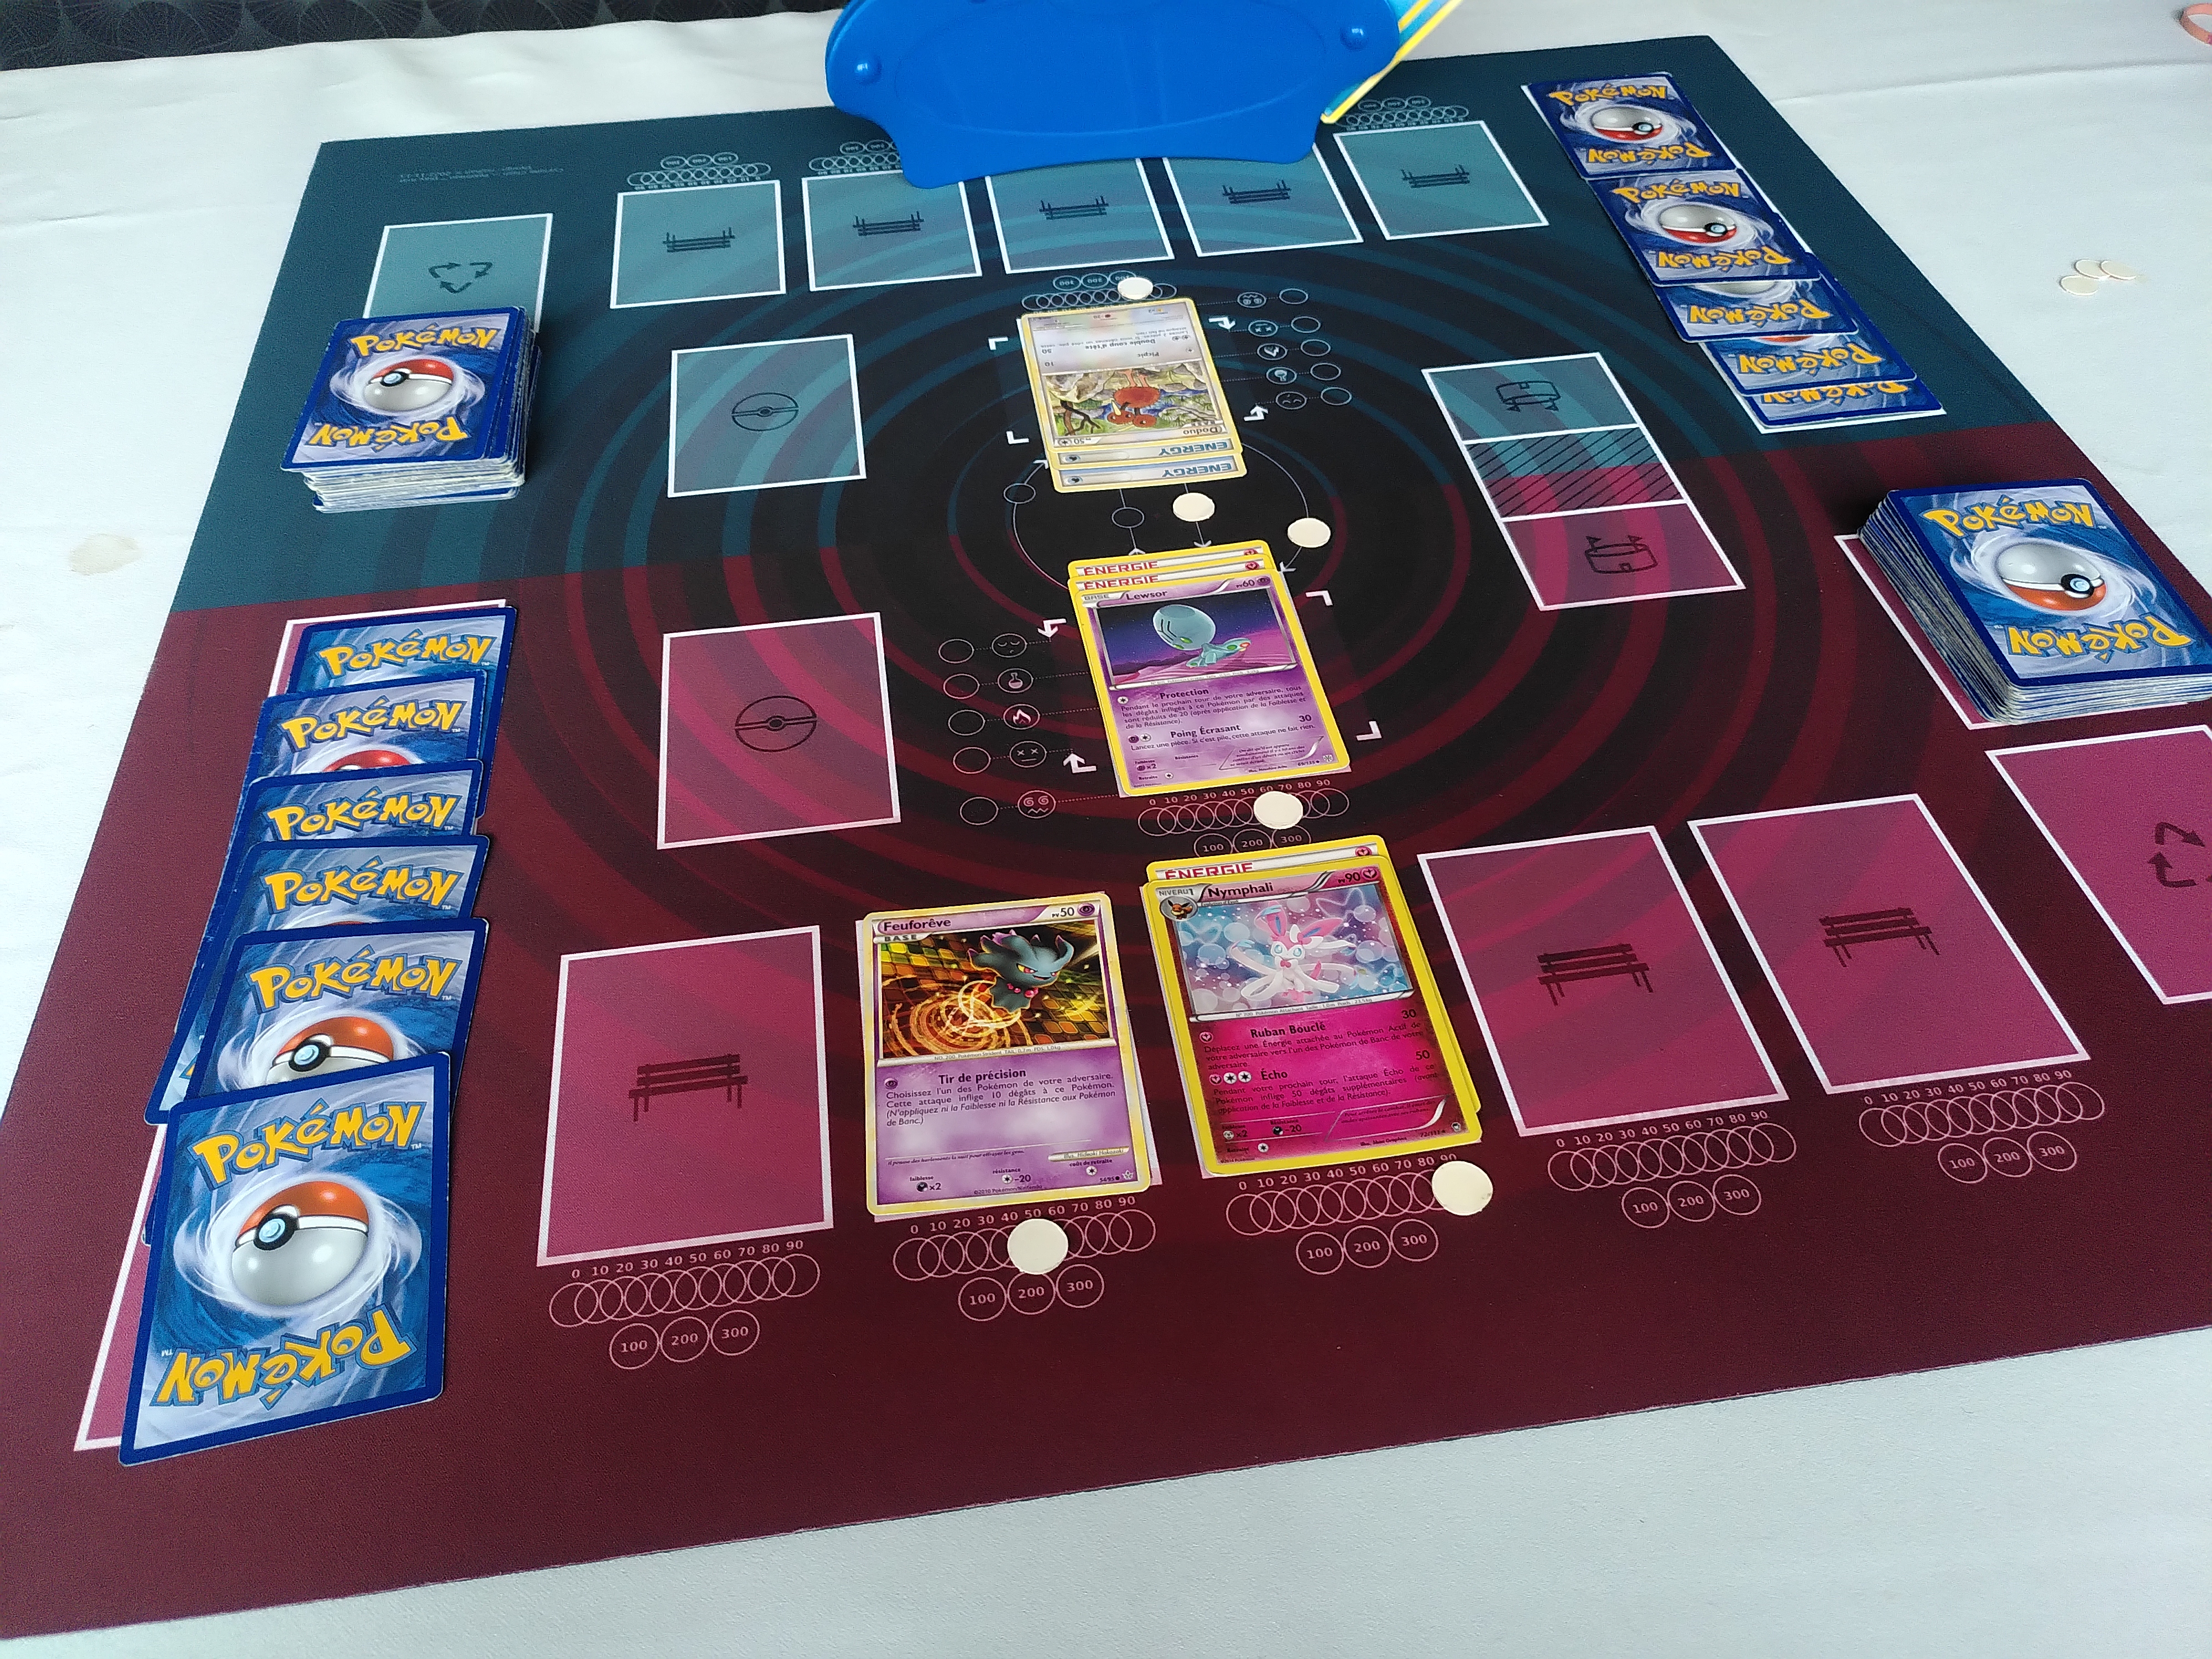 Une photo d'une partie de jeu de carte en cours, montrant notamment la position des marqueurs.